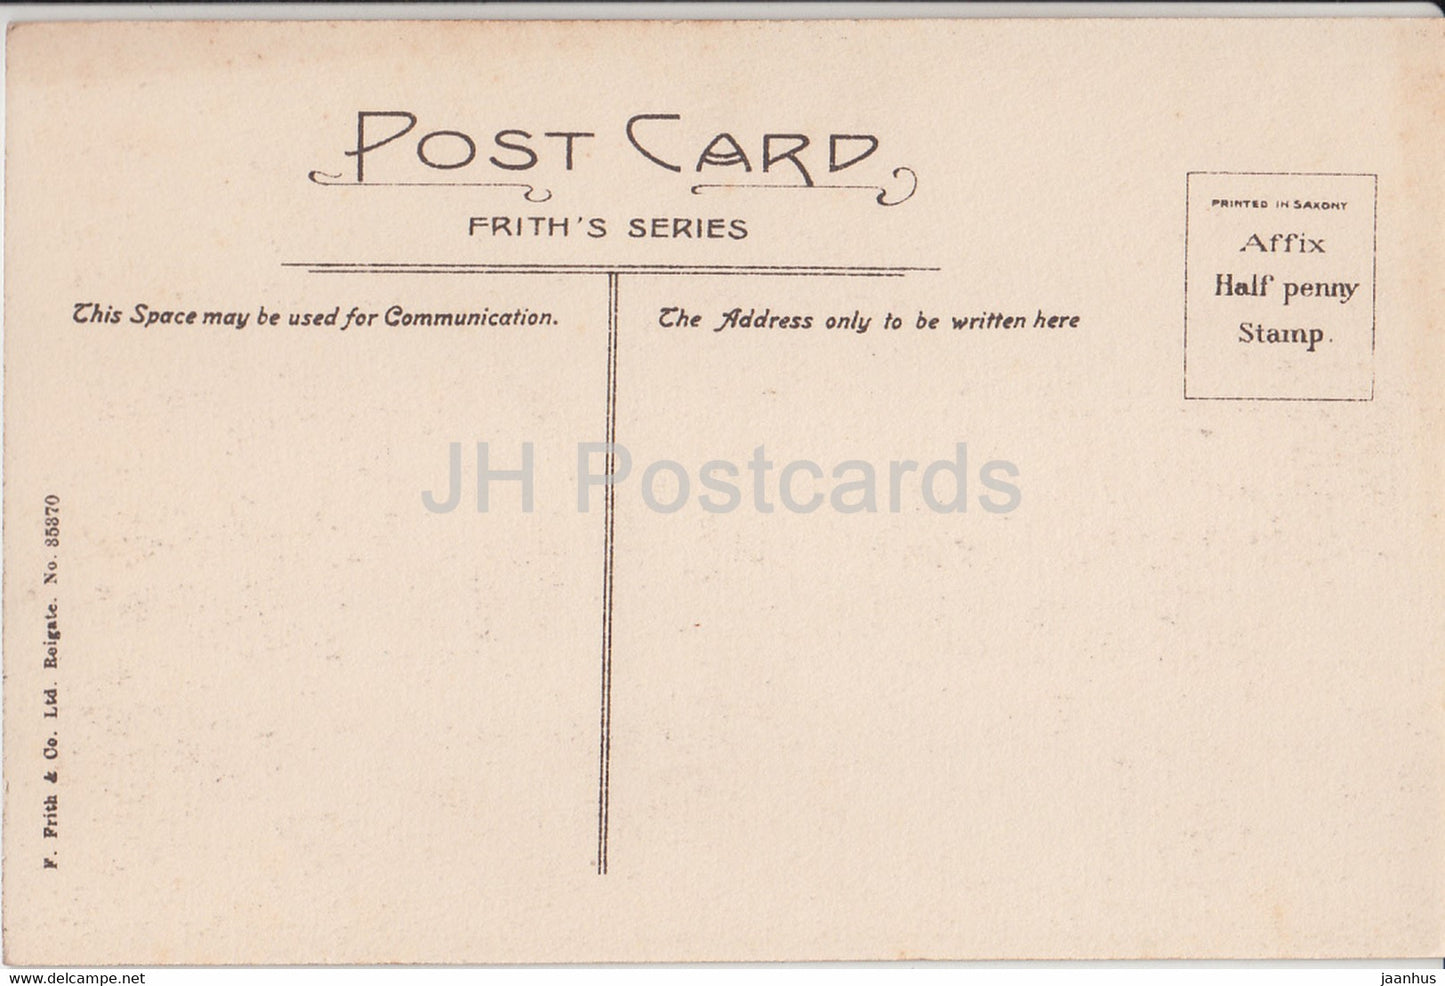 Windsor Castle and Bridge – 35370 – alte Postkarte – England – Vereinigtes Königreich – unbenutzt